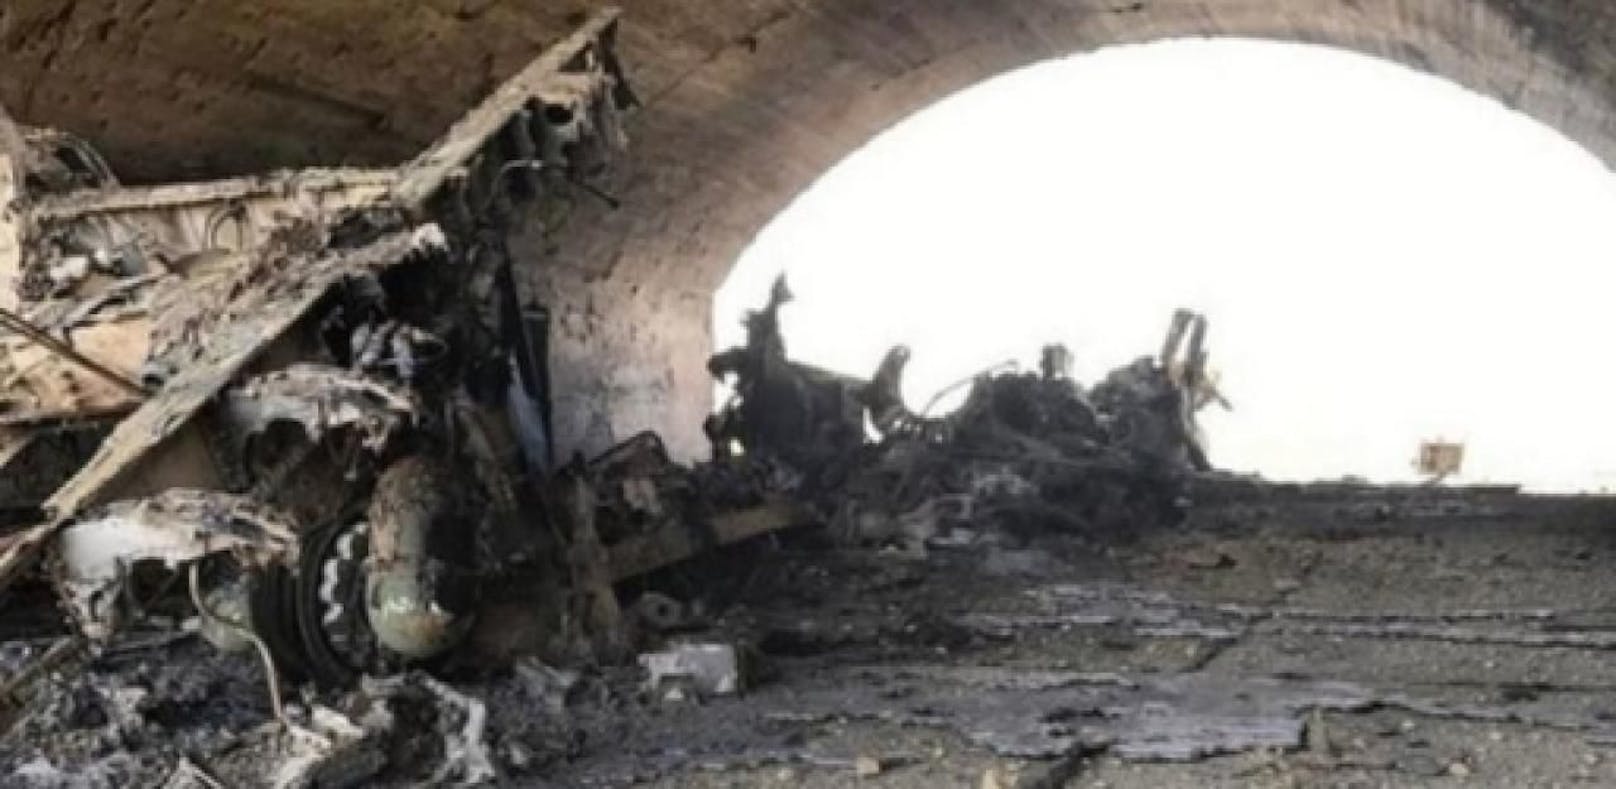 Bilder zeigen Zerstörung auf Luftwaffenbasis